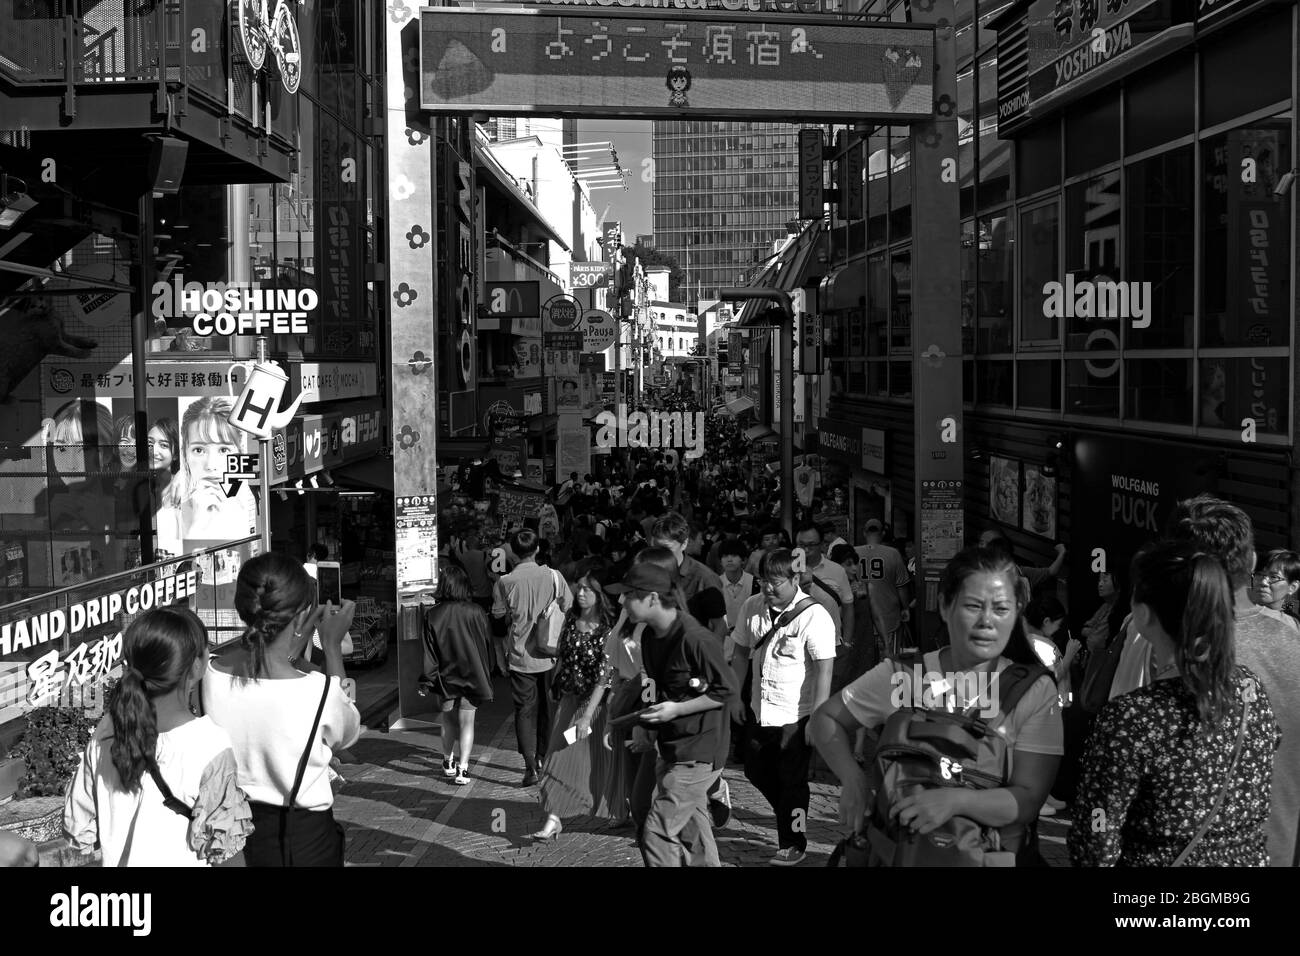 La vista di Takeshita Street, una strada commerciale in Harajuku, che è molto affollata da molti turisti provenienti da vari paesi. Foto Stock